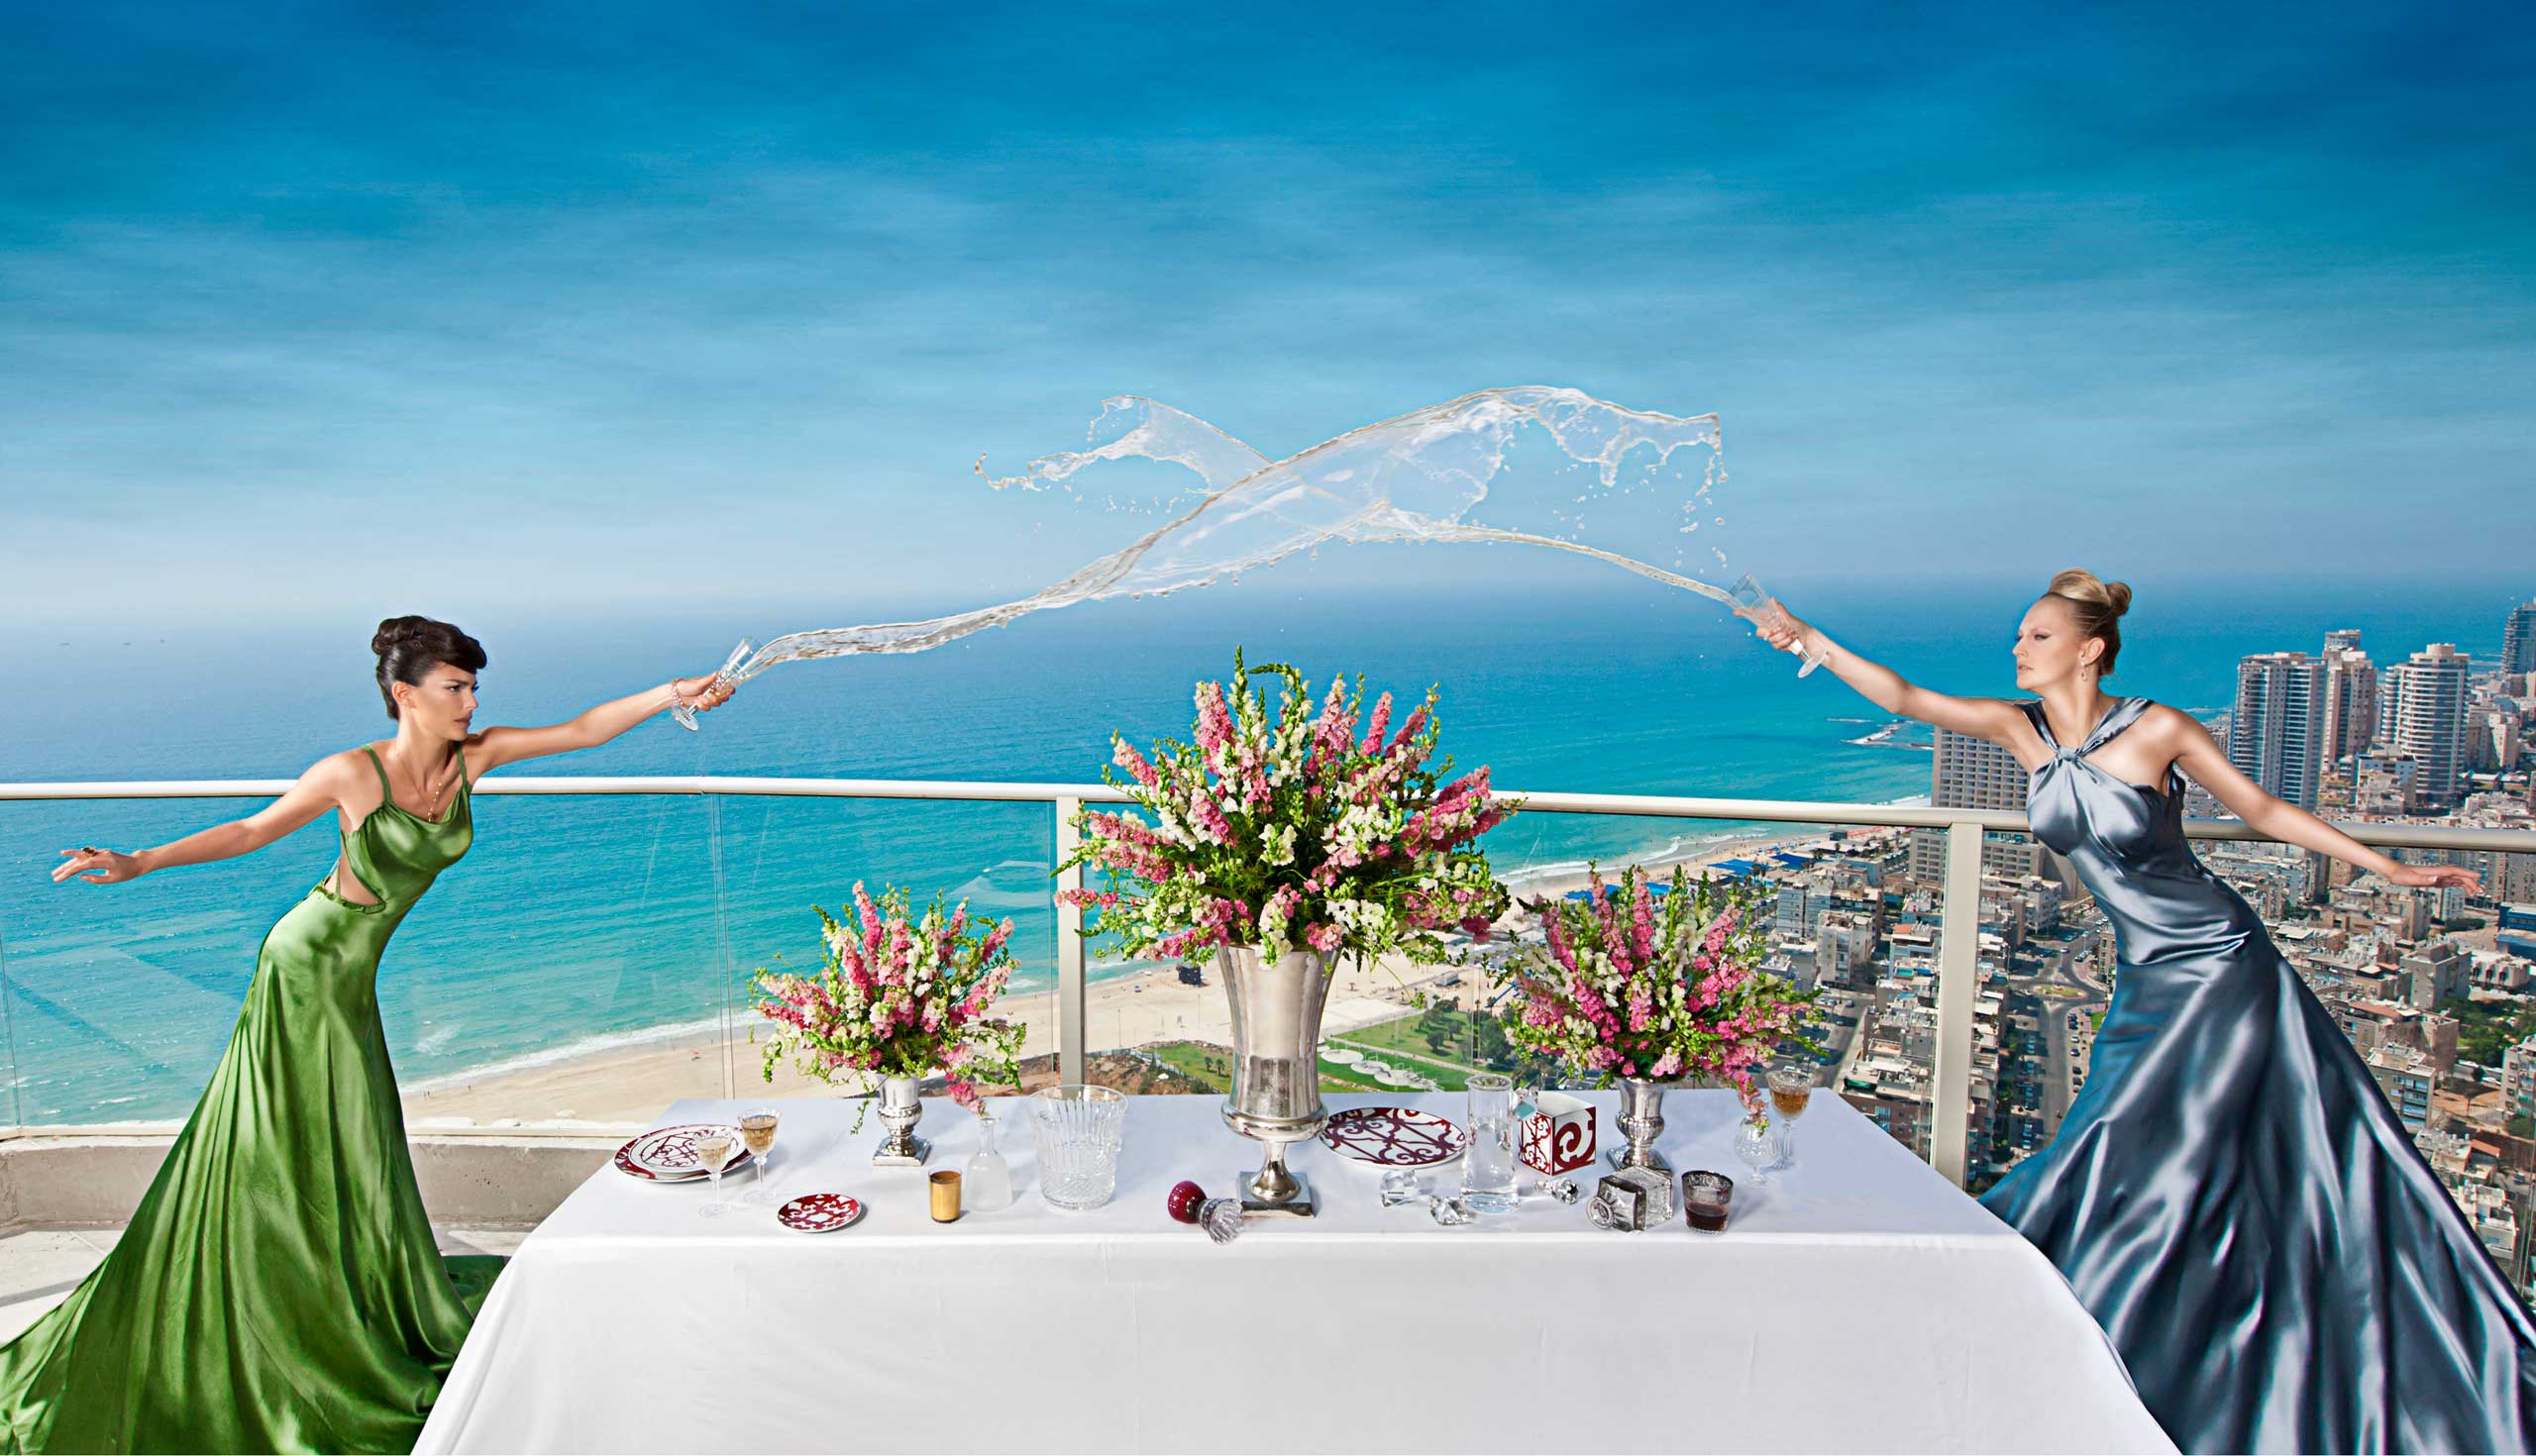 שתי דוגמניות בשמלת ערב סאטן כחולה וירוקה שופכות שמפניה אחת לכיוון השניה מעל שולחן עם סידורי פרחים ברקע נוף מהקומה ה29 במגדל על חוף בת ים